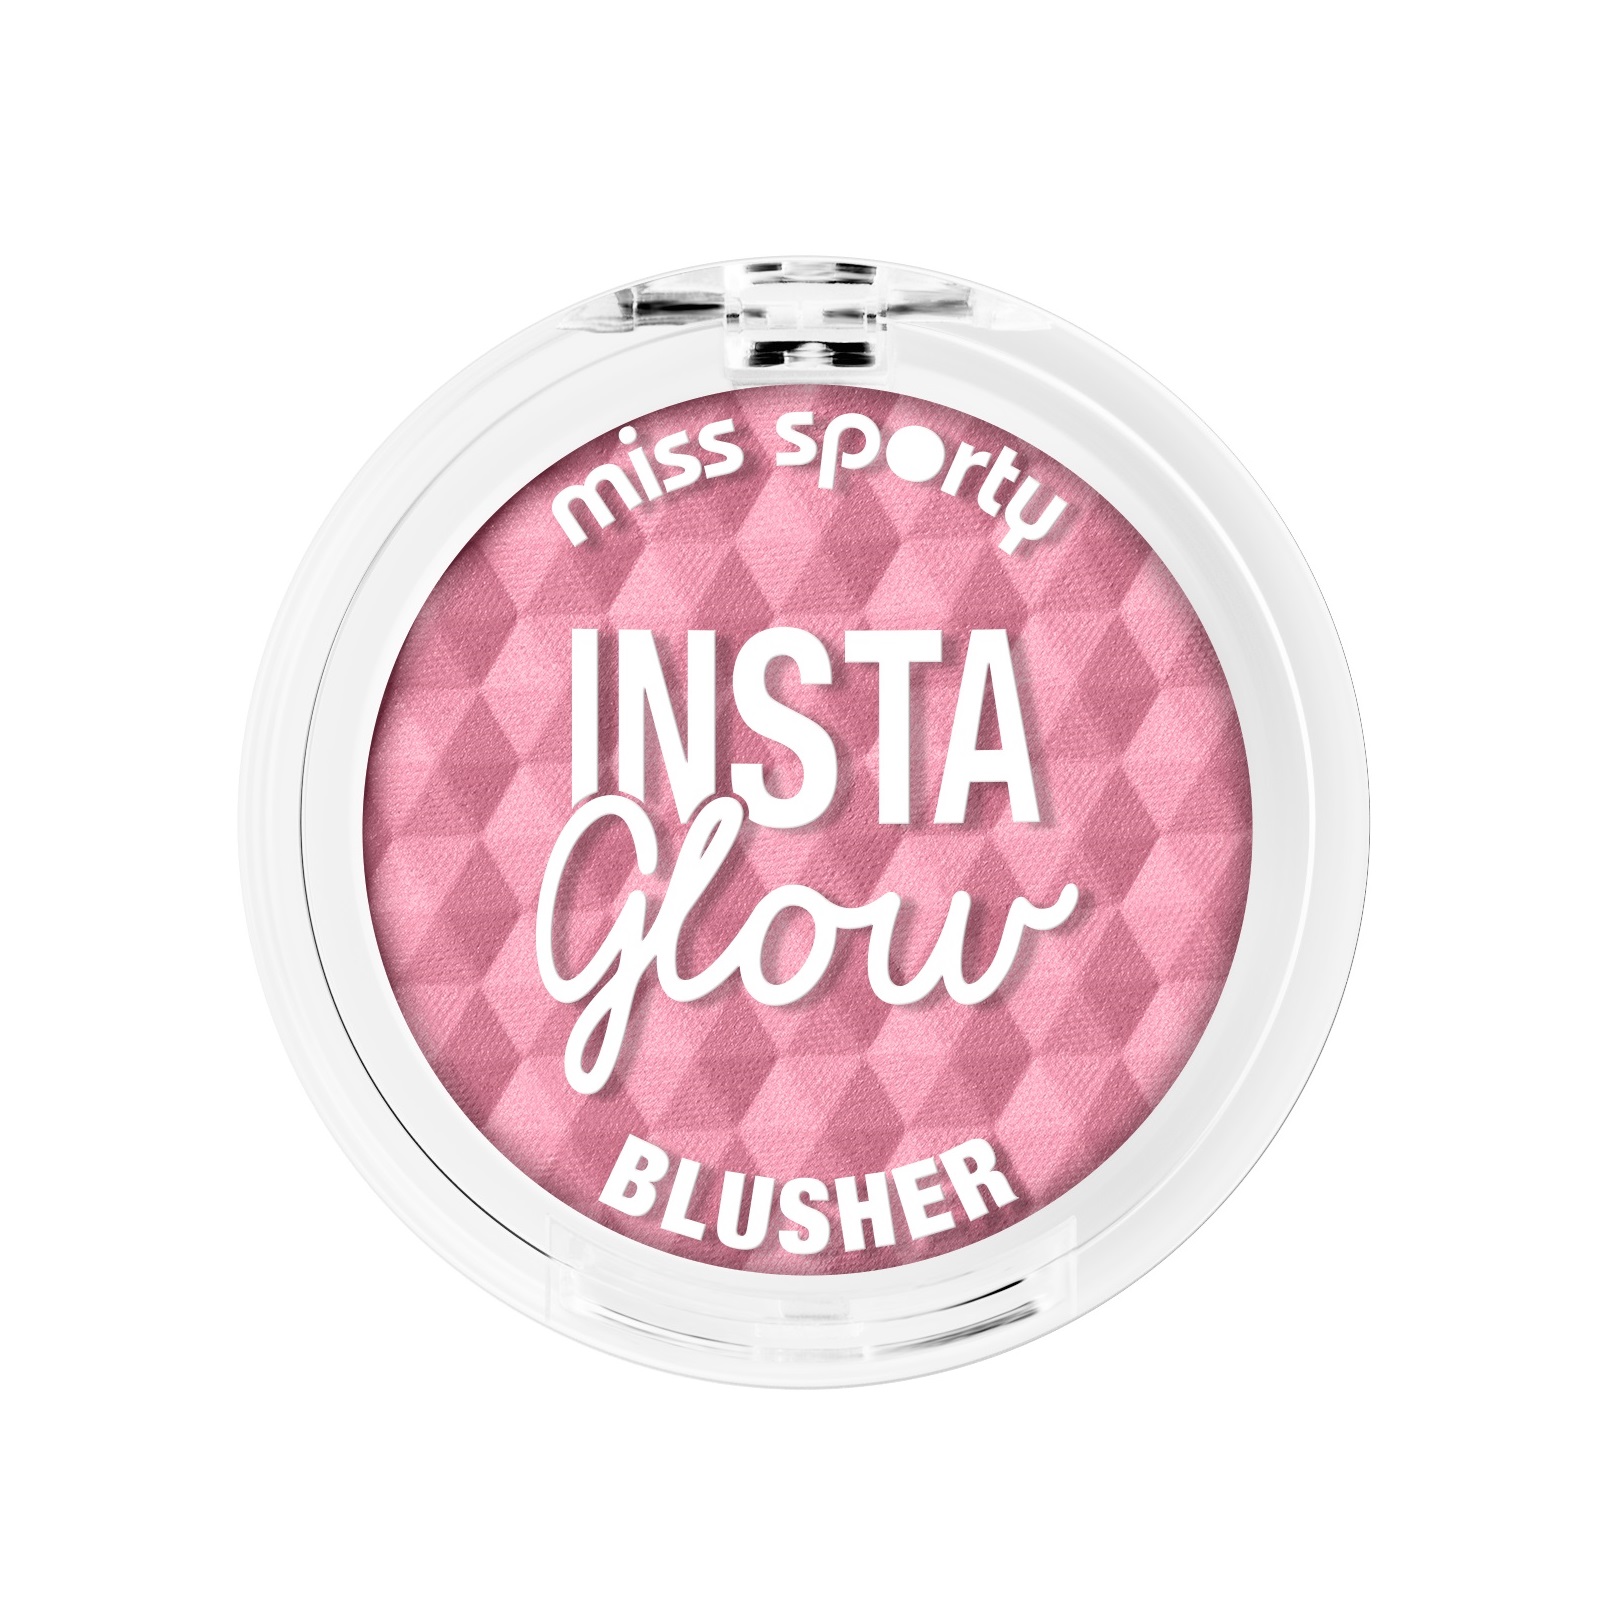 Insta Glow Blusher rÃ³Â¿ do policzkÃ³w 003 Flushed Pink 5g